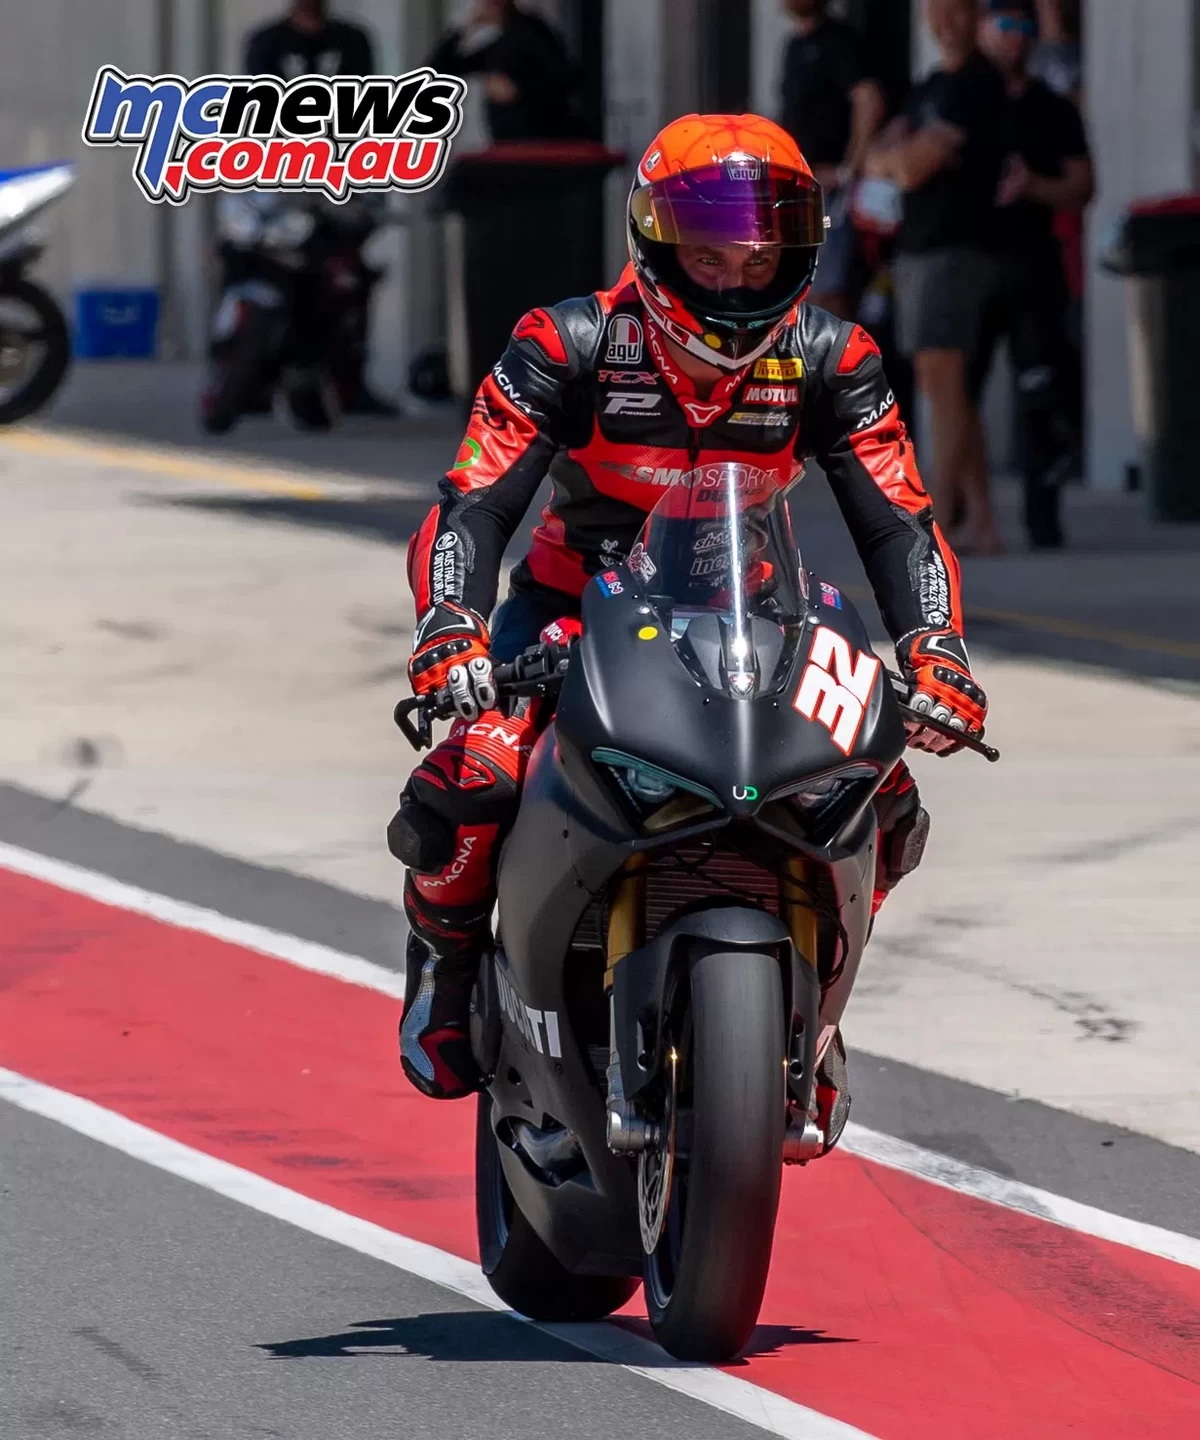 Фотографии mcnews.com.au - Оли Бейлисс и его новый Ducati V2 на тестах в The Bend